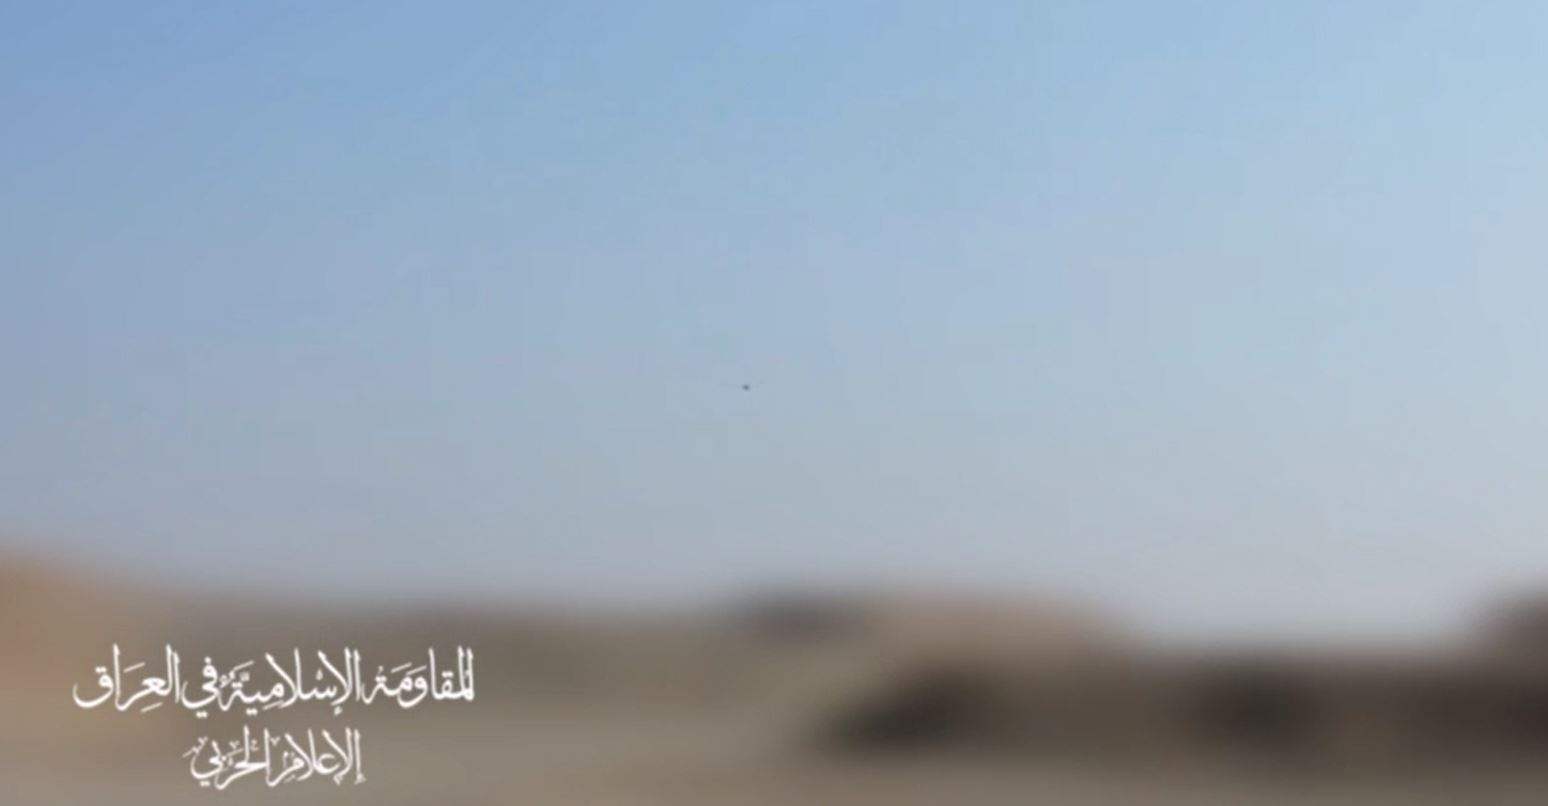 بالفيديو - مشاهد من إطلاق &quot;المقاومة الاسلامية في العراق&quot; لطائرة مسيّرة بإتجاه قاعدة حرير الأميركية في أربيل 